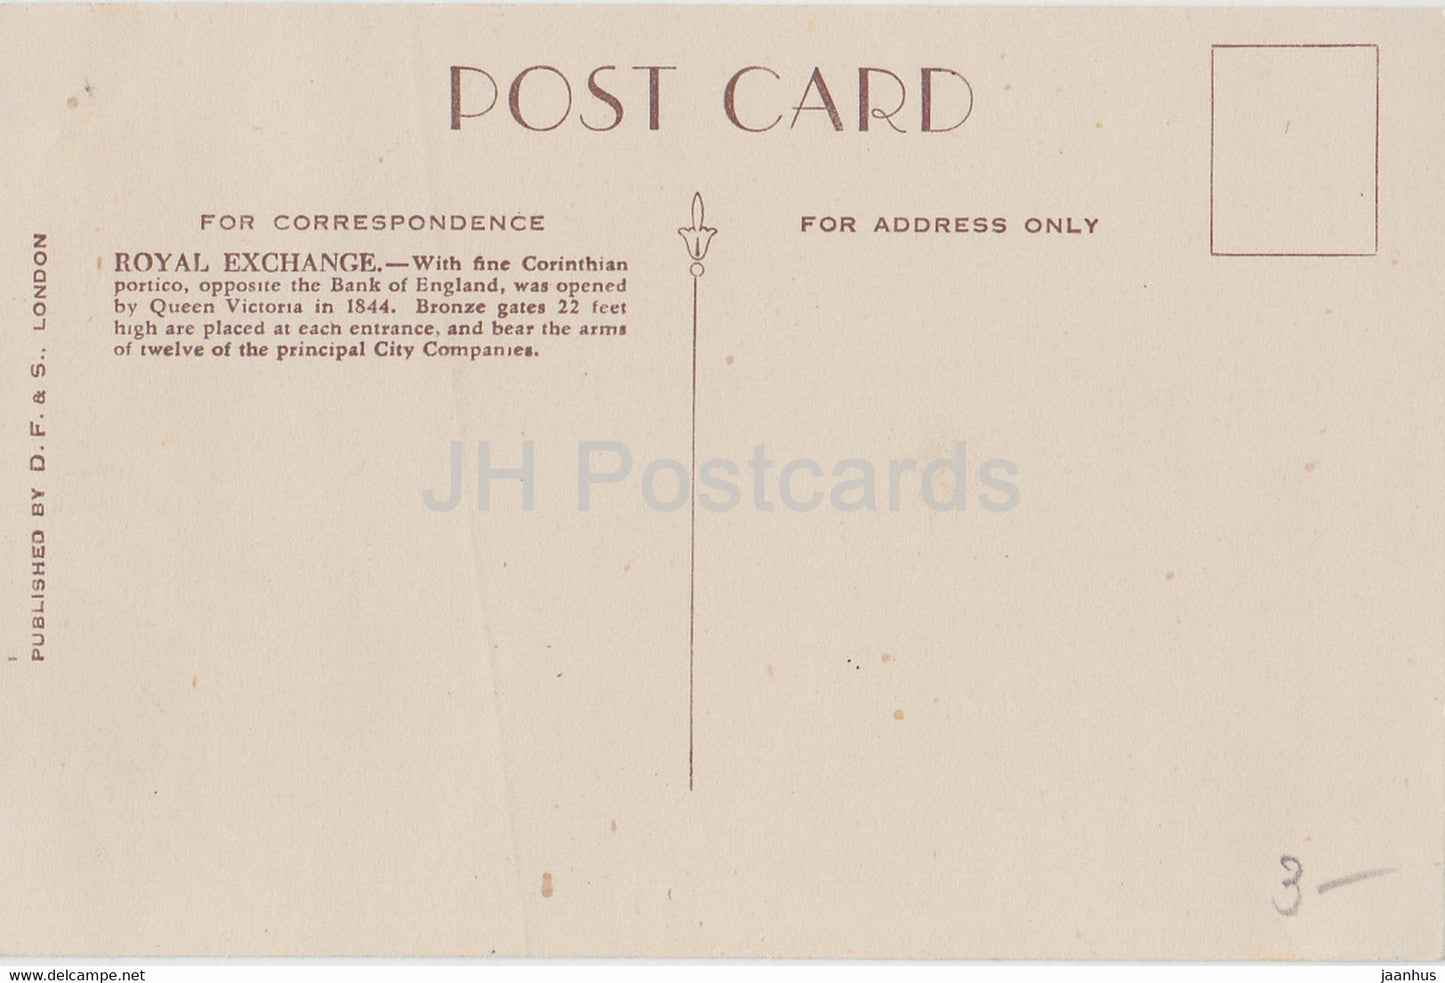 London – The Royal Exchange – Auto – alte Postkarte – England – Vereinigtes Königreich – unbenutzt